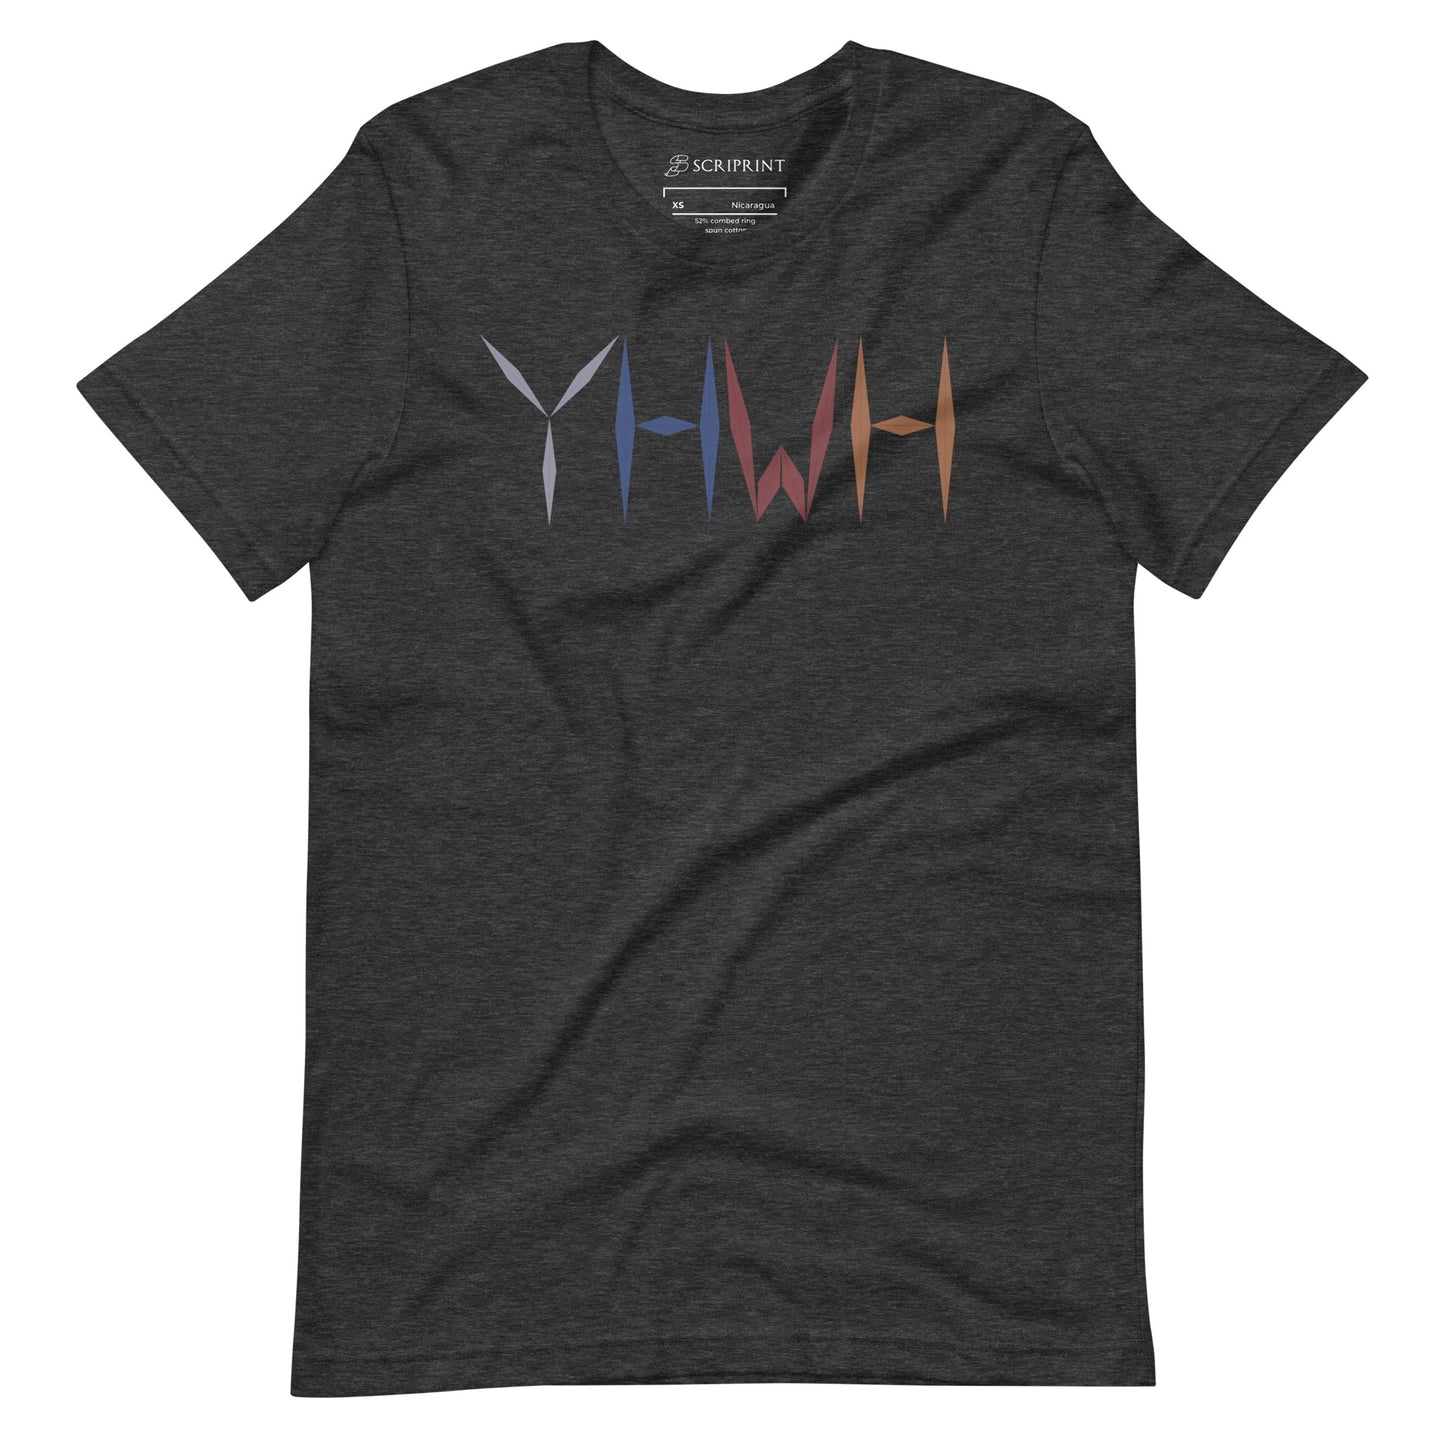 YHWH Women's T-Shirt